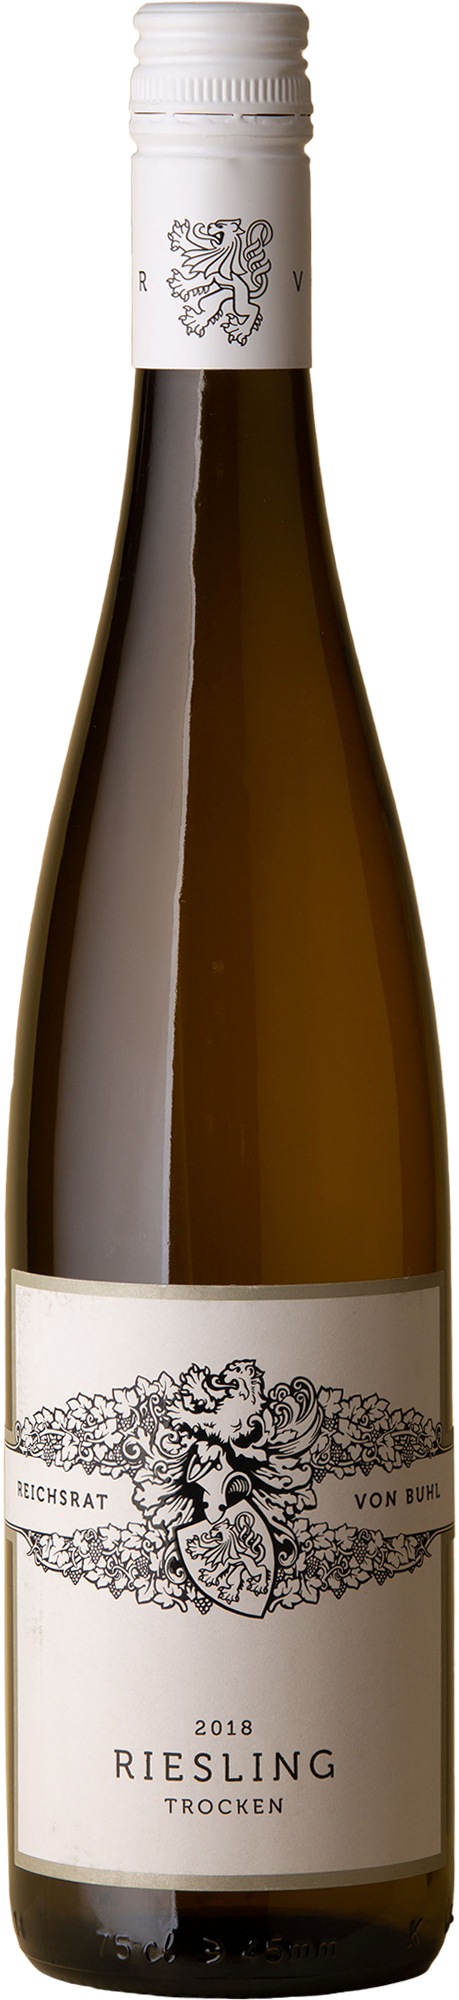 Von Buhl - Riesling 2018 White Wine